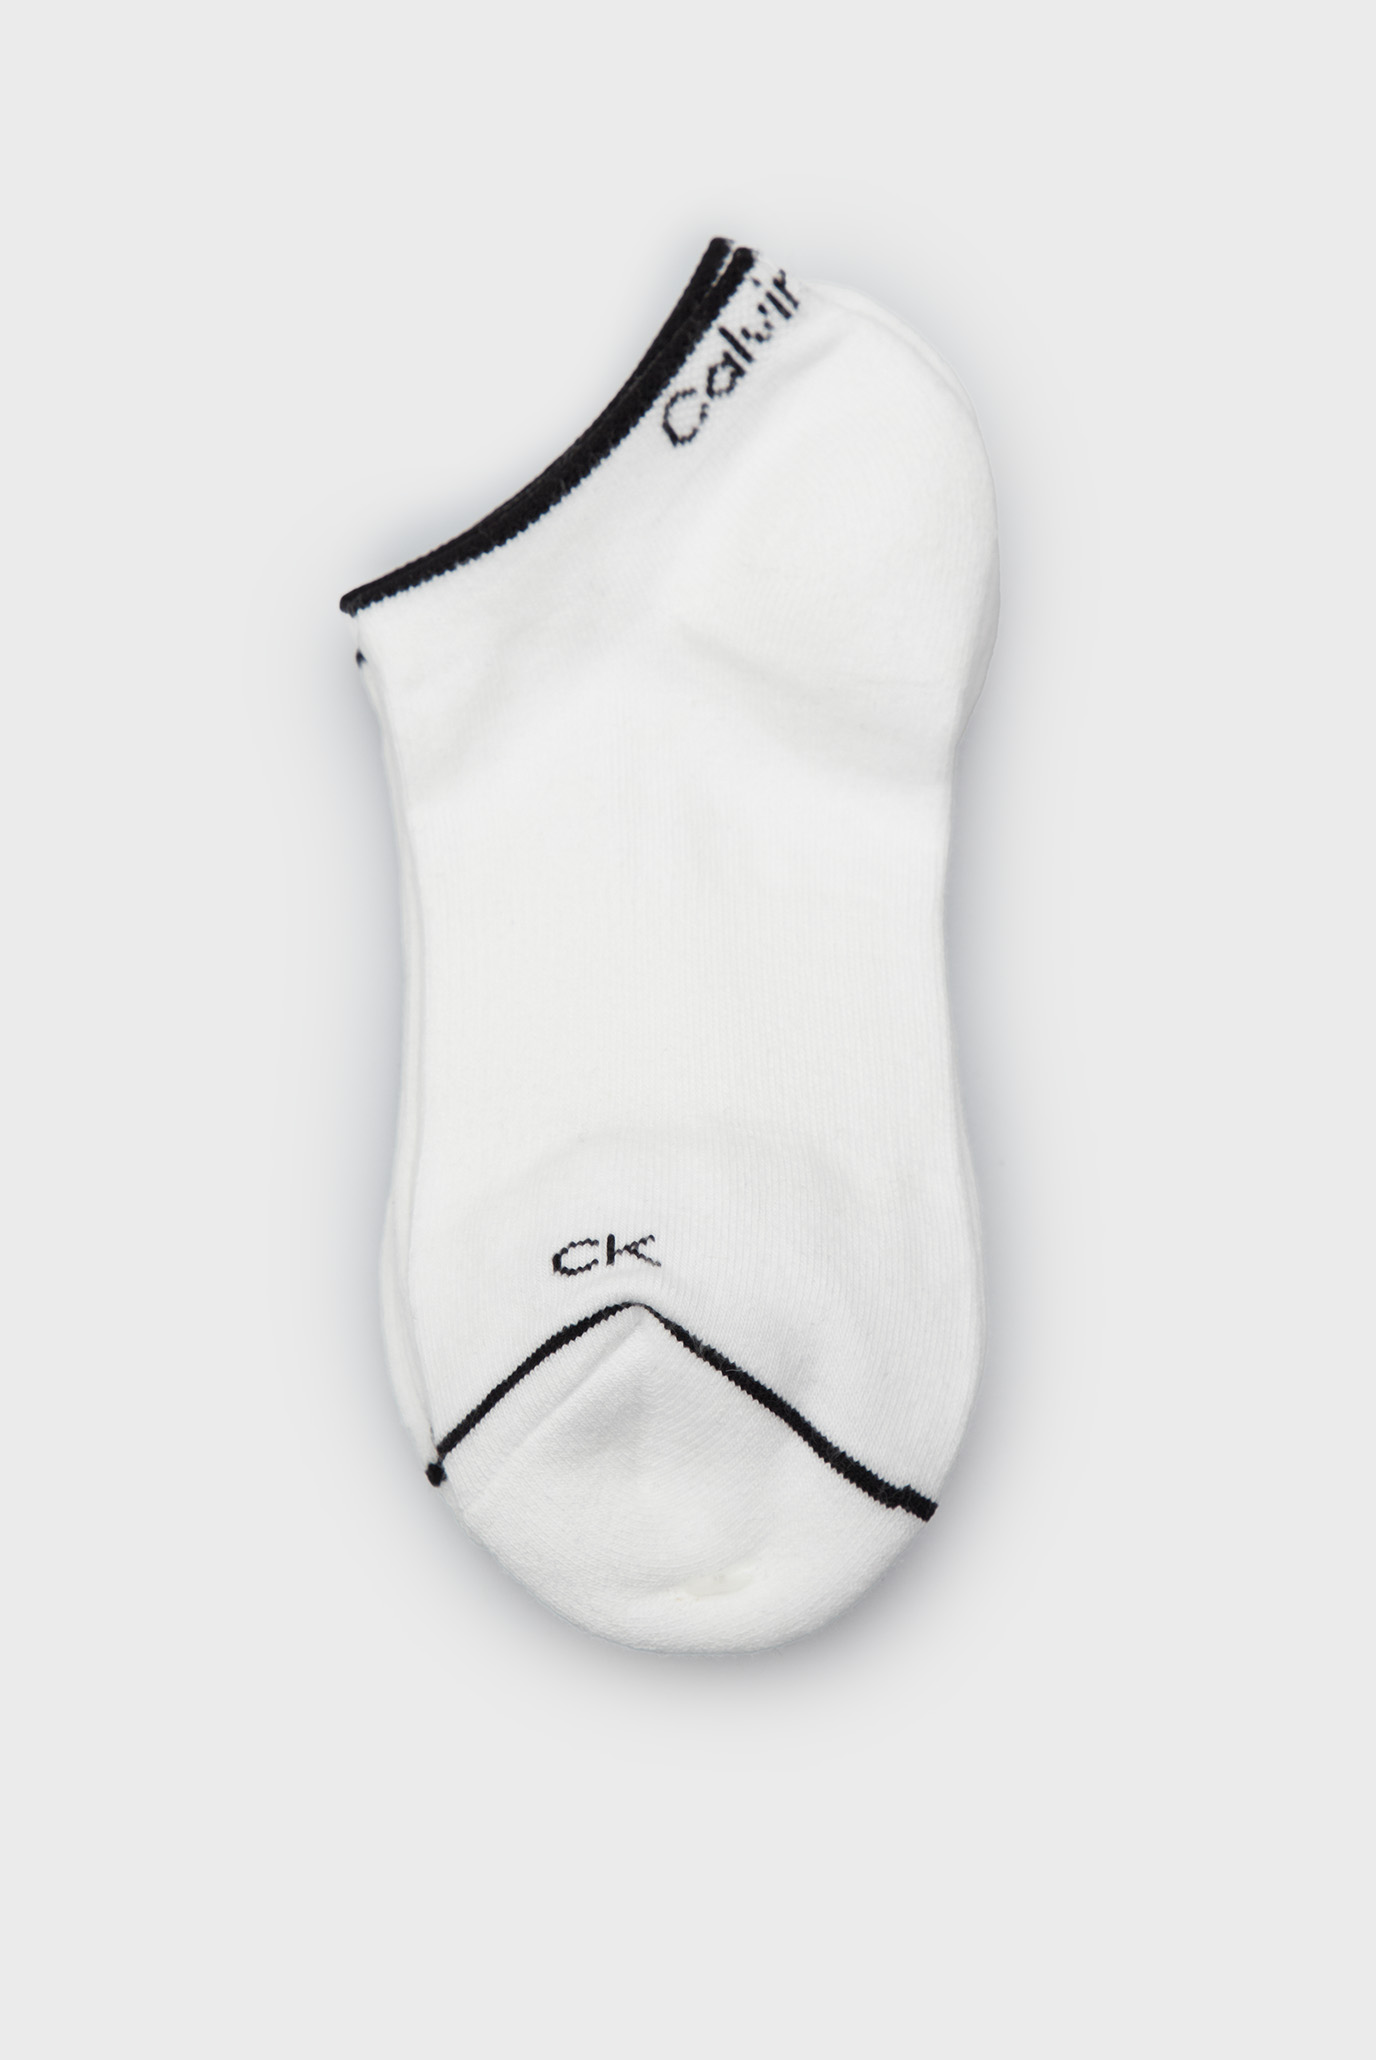 Жіночі білі шкарпетки (3 пари) CK WOMEN SNEAKER 3P ATHLEISURE 1